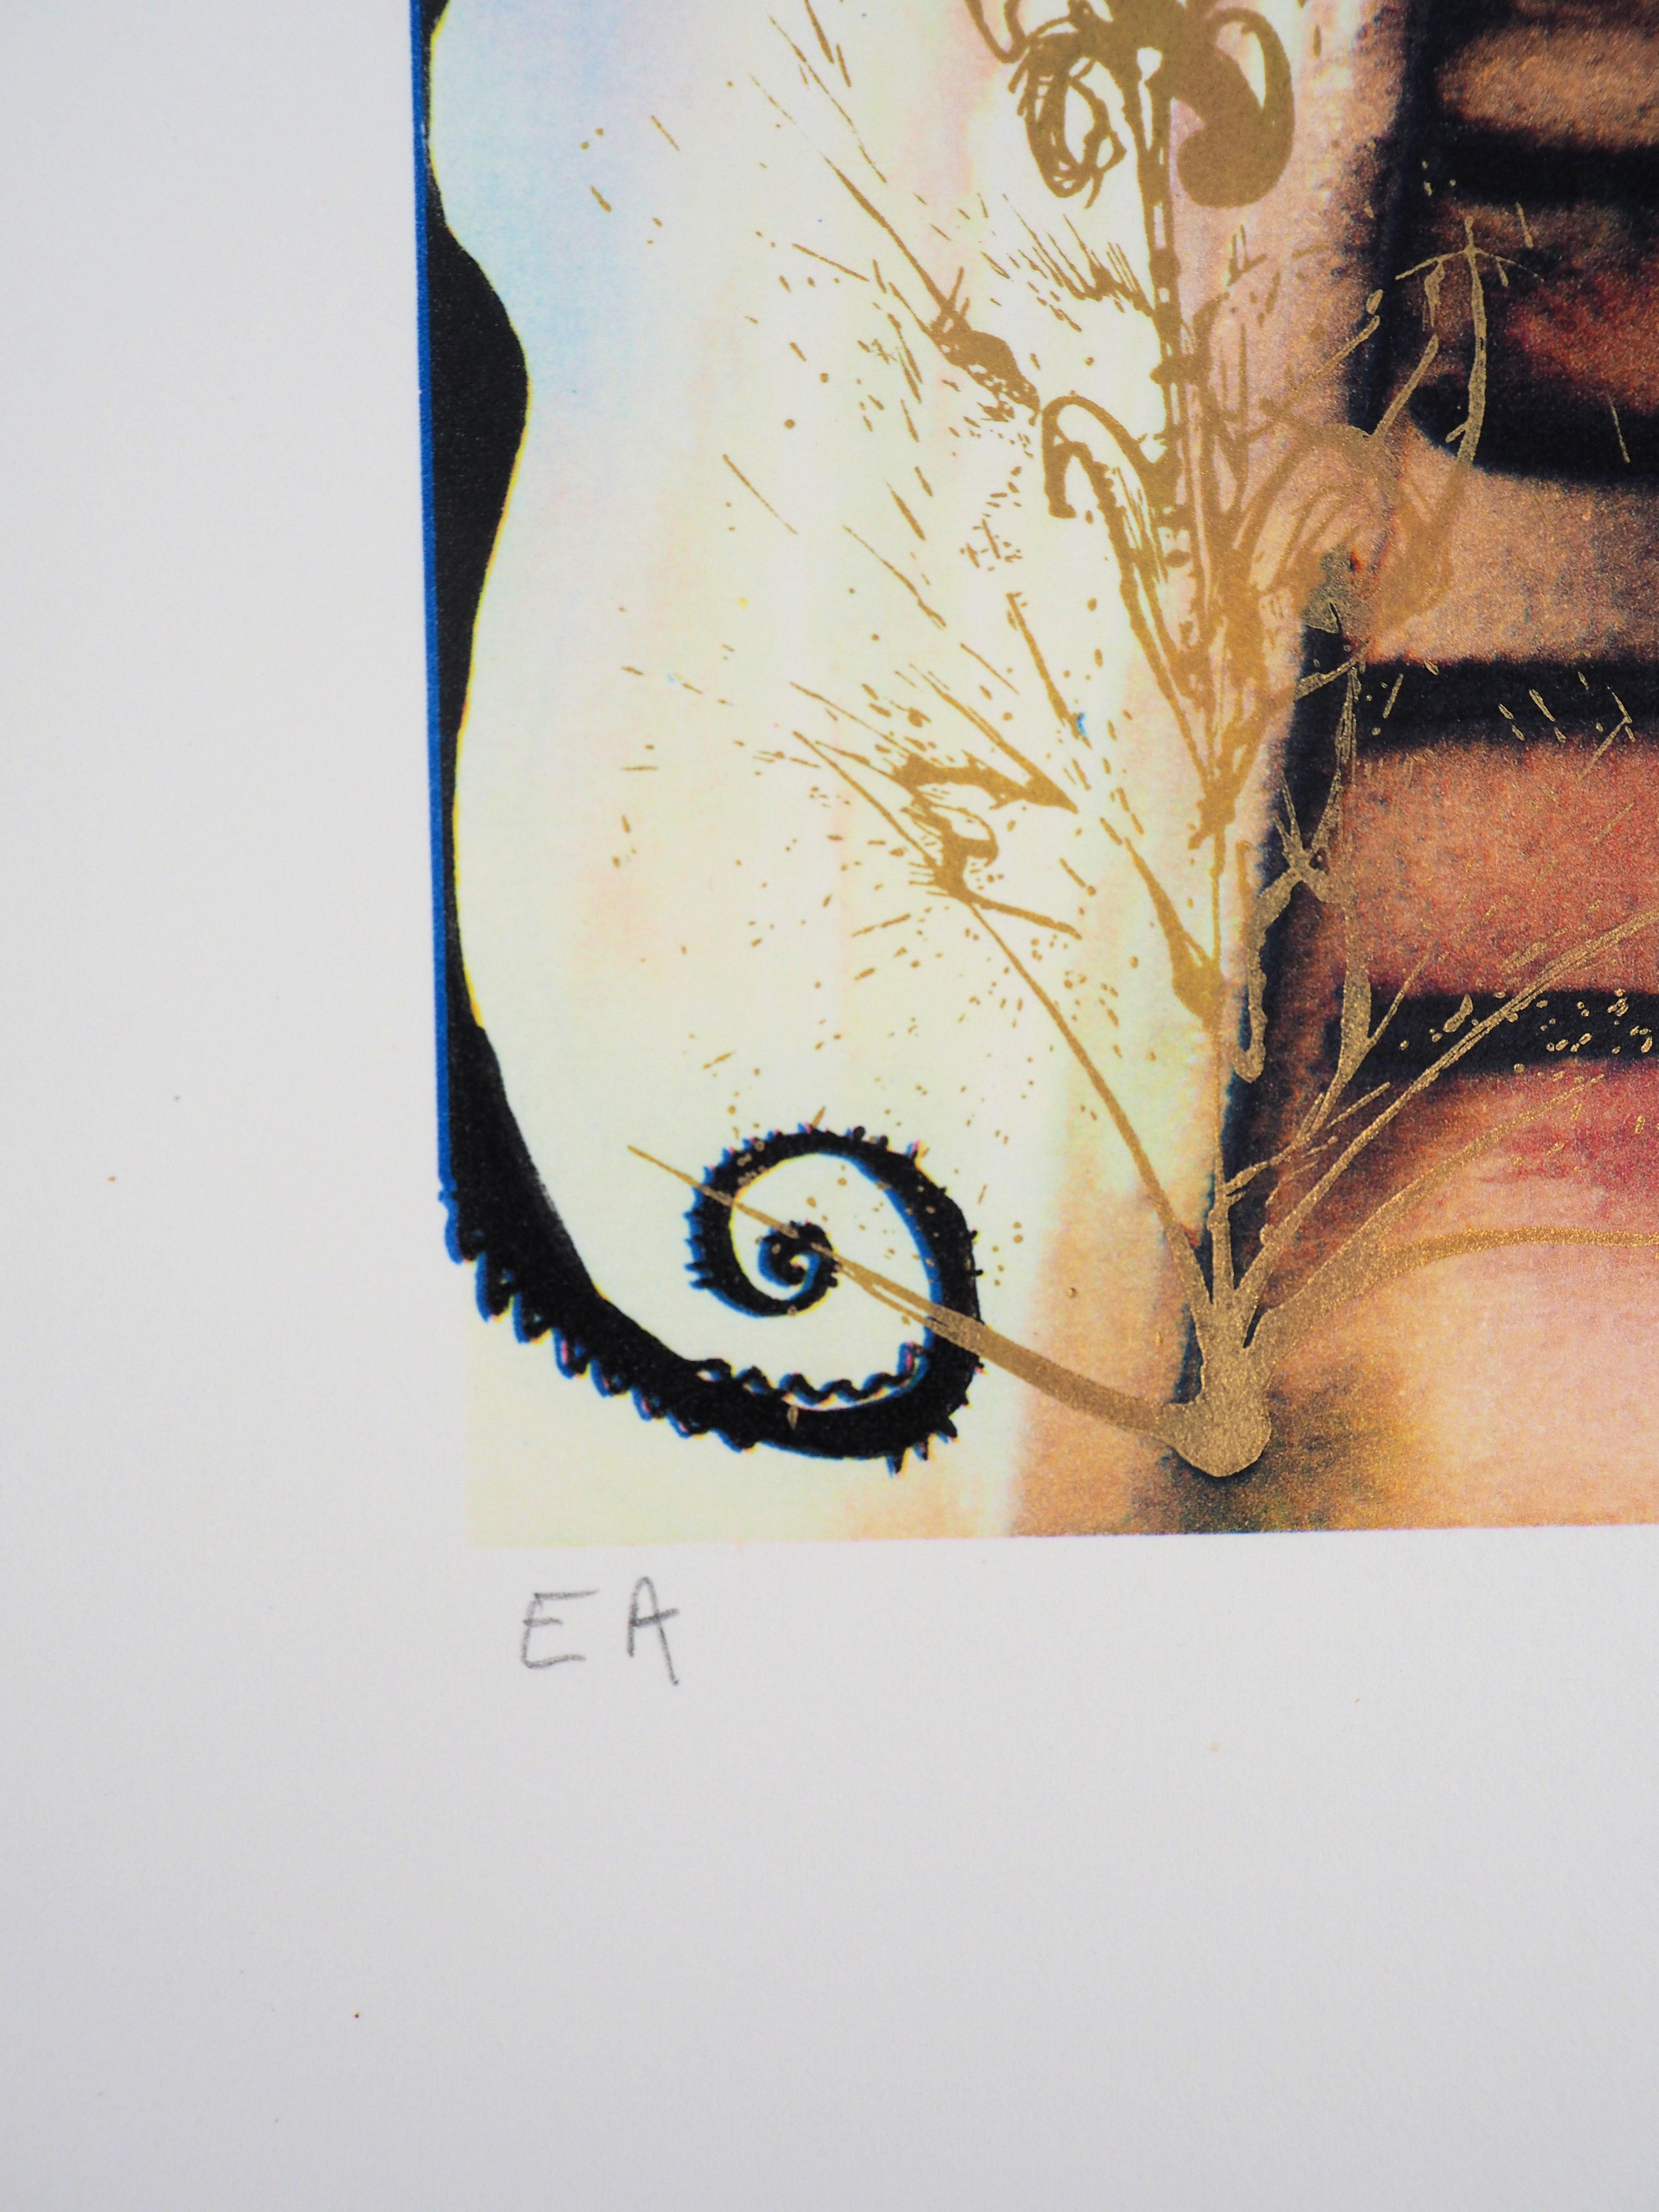 Salvador DALI
Alice au pays des merveilles : le lapin envoie un petit billet, 1968

Héliogravure et gravure sur bois
Signé à la main au crayon
Signature imprimée dans la plaque
E.A. justifié (épreuve d'artiste)
Sur vélin de Rives 57,5 x 45 cm